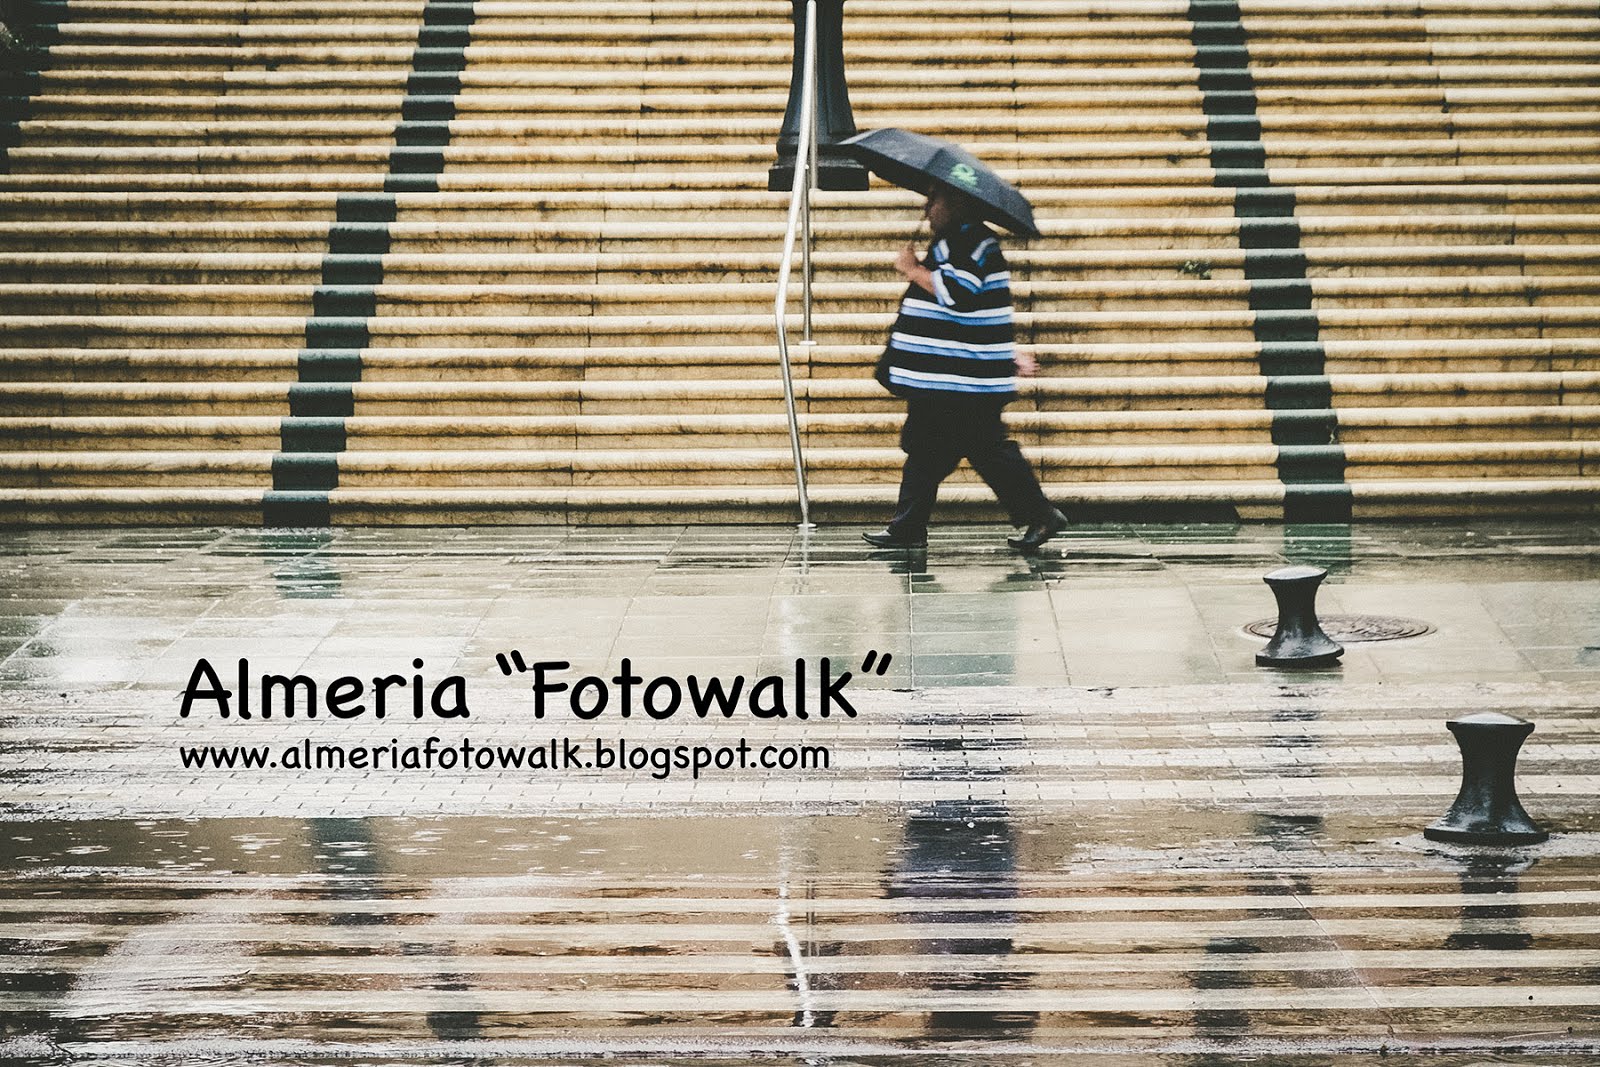 Almeria "Fotowalk"